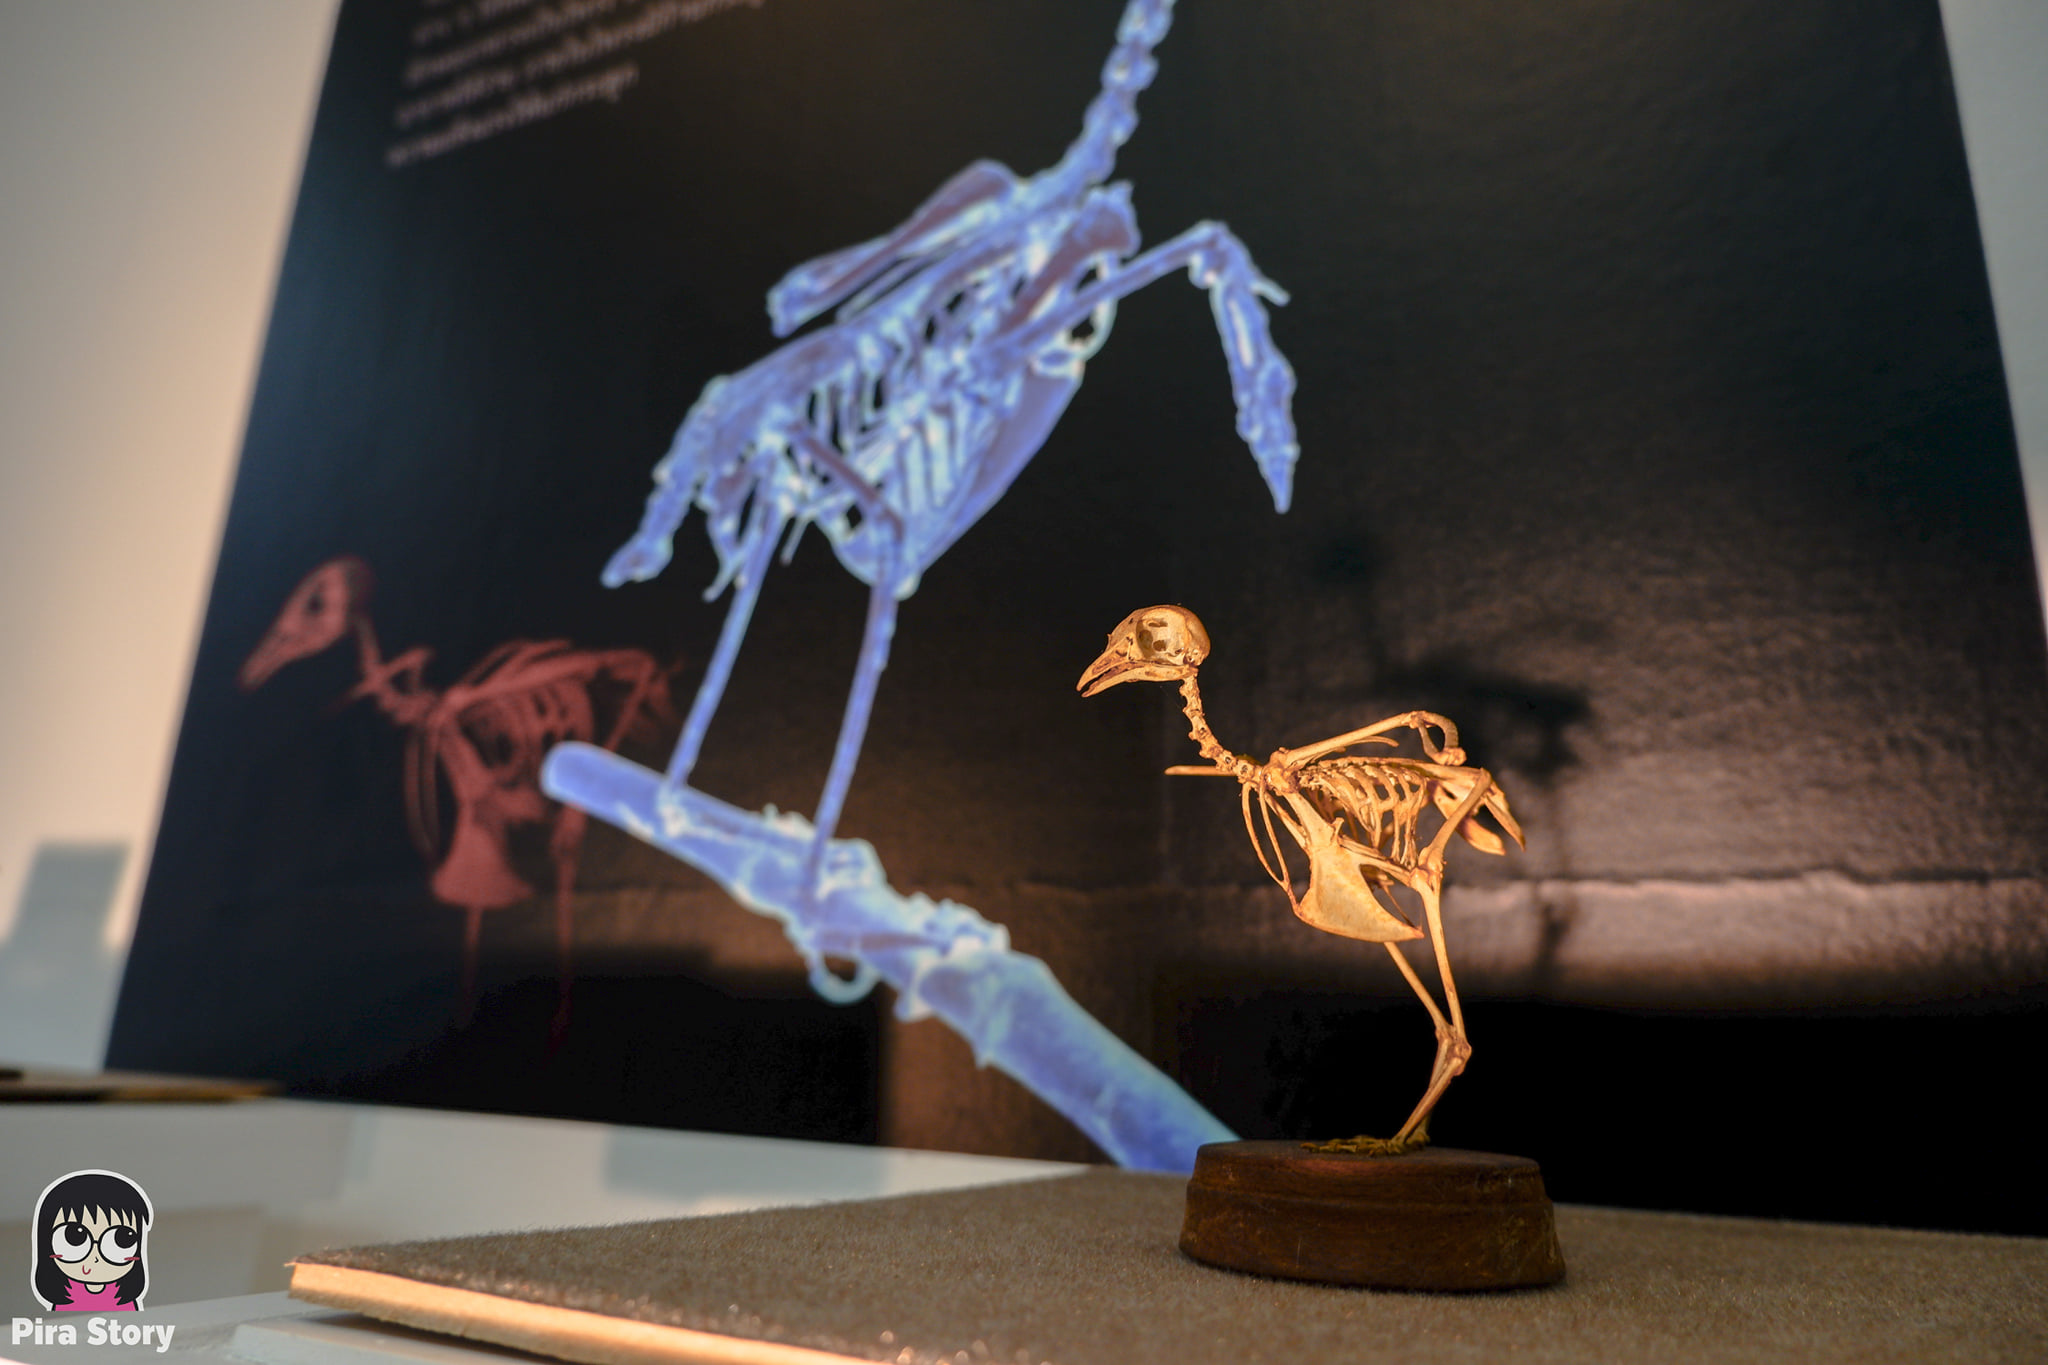 ความลับของโครงกระดูก Skeleton's Secrets ศึกษากายวิภาคสัตว์ ที่พิพิธภัณฑ์ จุฬาลงกรณ์มหาวิทยาลัย คณะวิทยาศาสตร์ ชีววิทยา Night at the museum 2020 เที่ยวพิพิธภัณฑ์ เที่ยวกรุงเทพ สยาม กระดูกสัตว์ กายวิภาคศาสตร์ โครงสร้างร่างกาย โครงสร้างกระดูก สัตว์เลี้ยงลูกด้วยนม สัตว์มีกระดูกสันหลัง กระดูกไก่ กระดูกนก